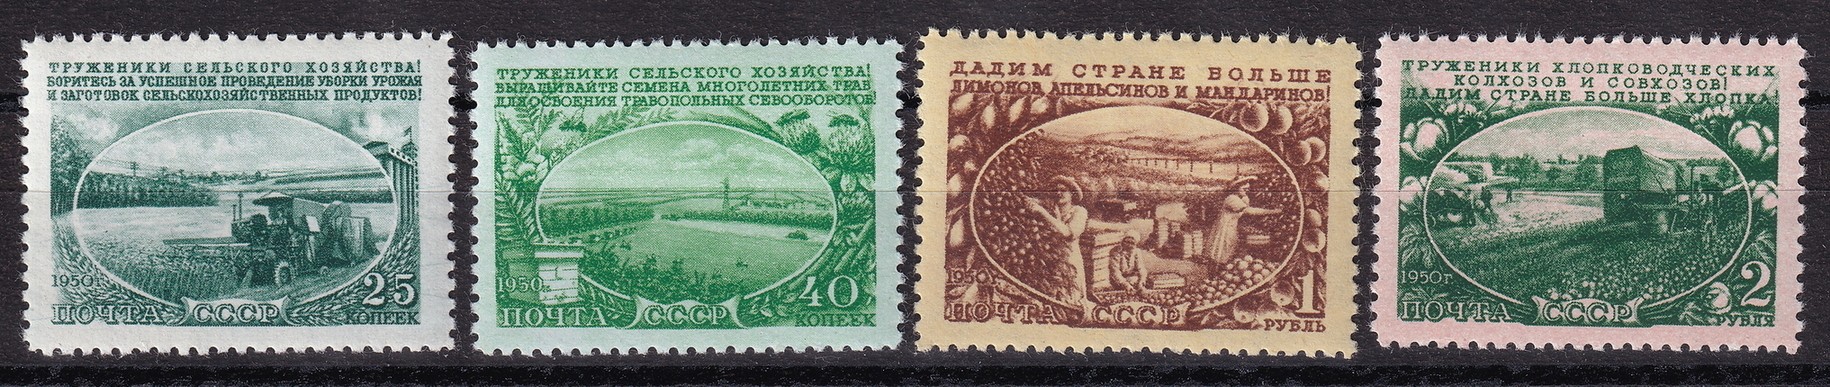 1951 россия